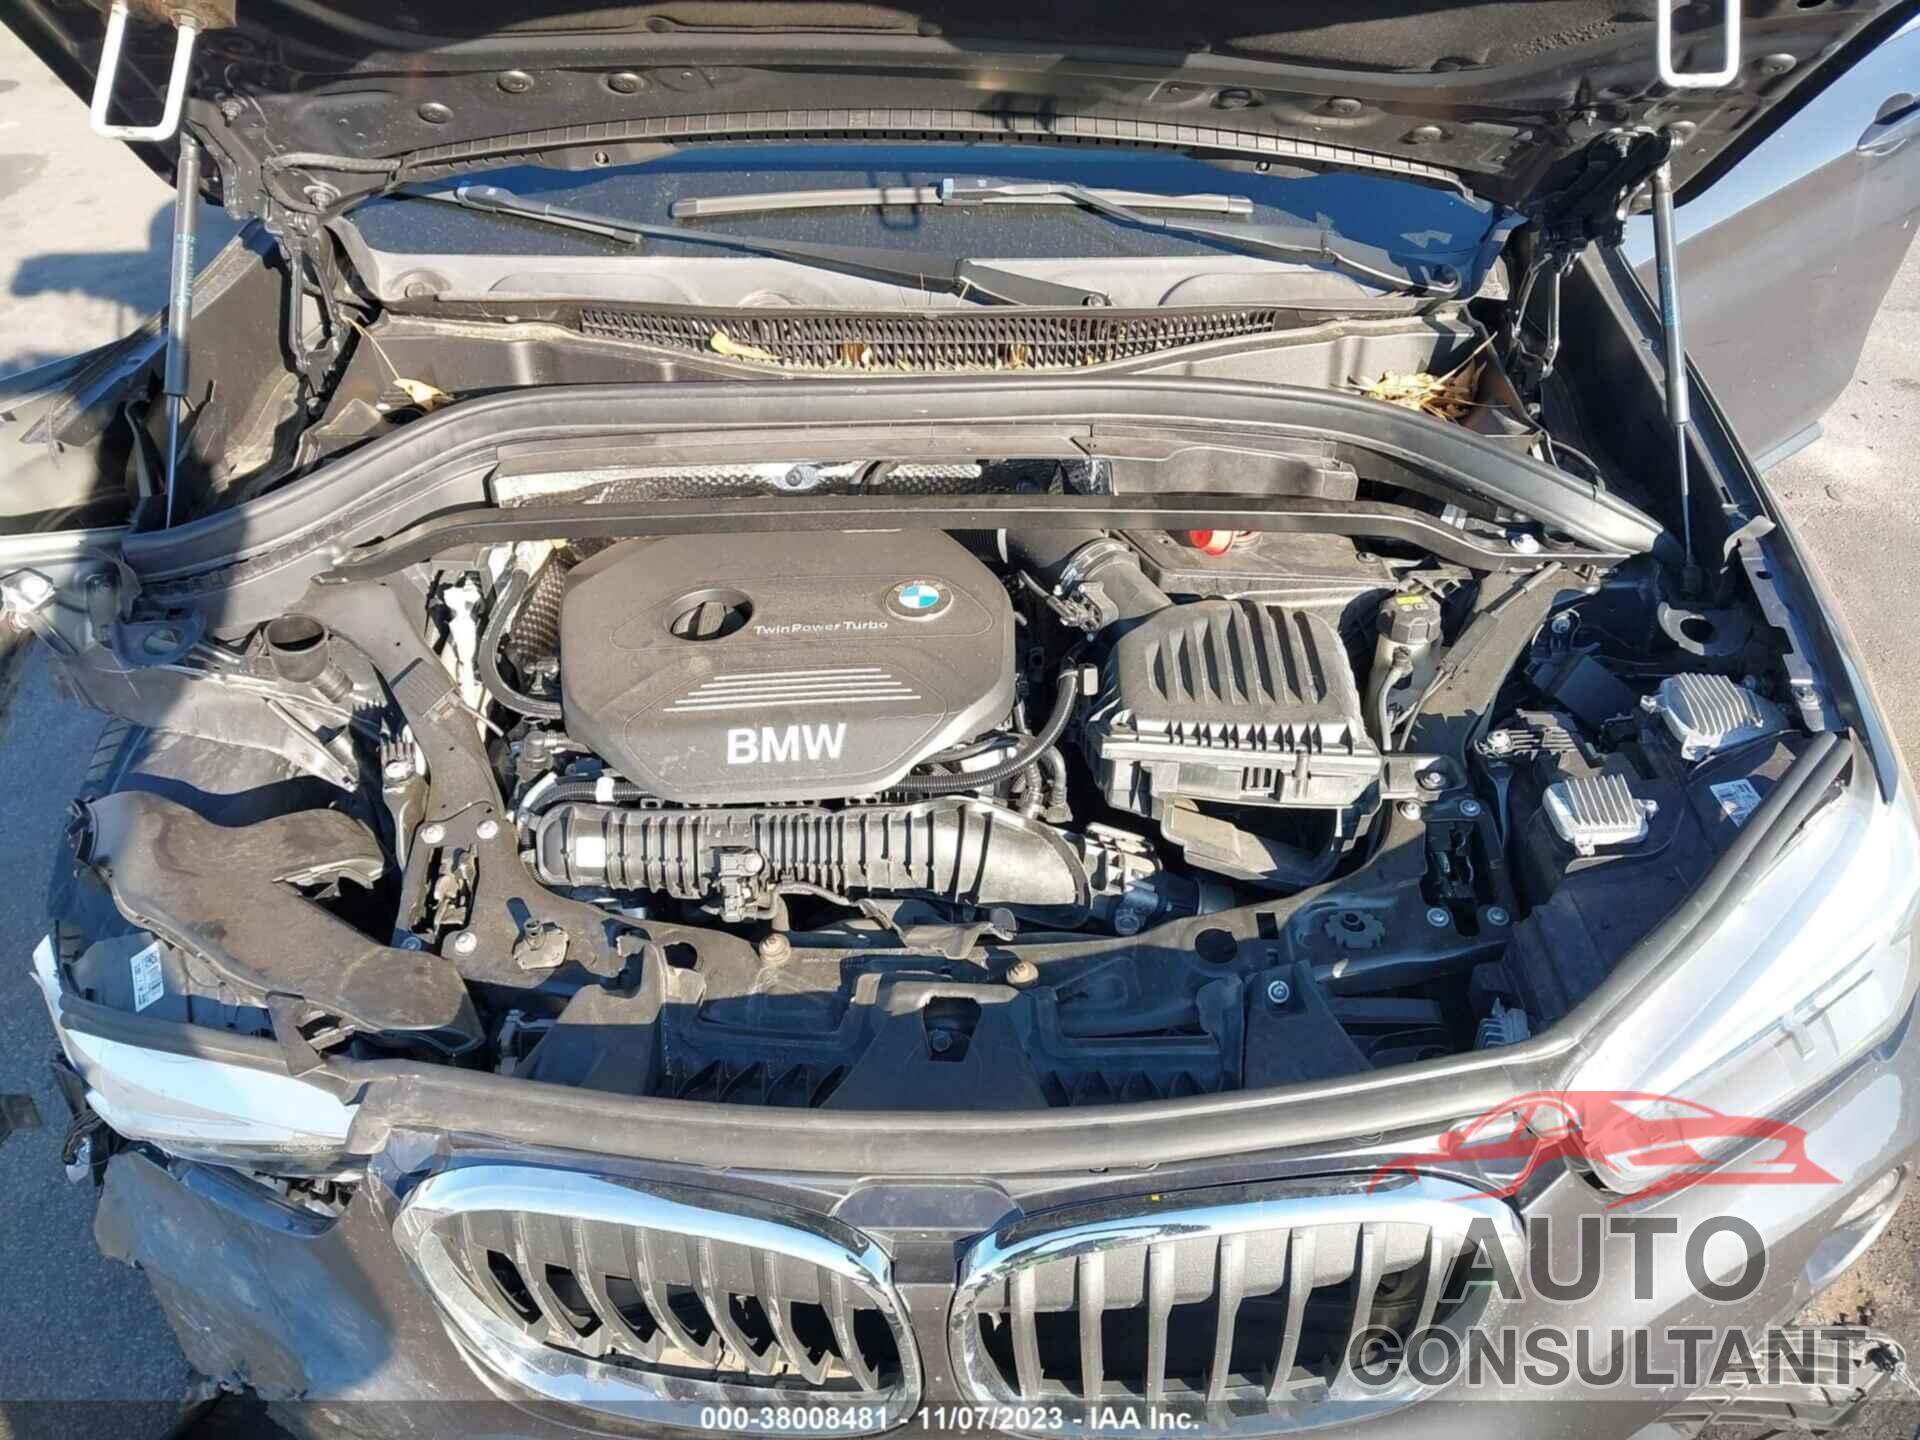 BMW X1 2017 - WBXHU7C34HP924677